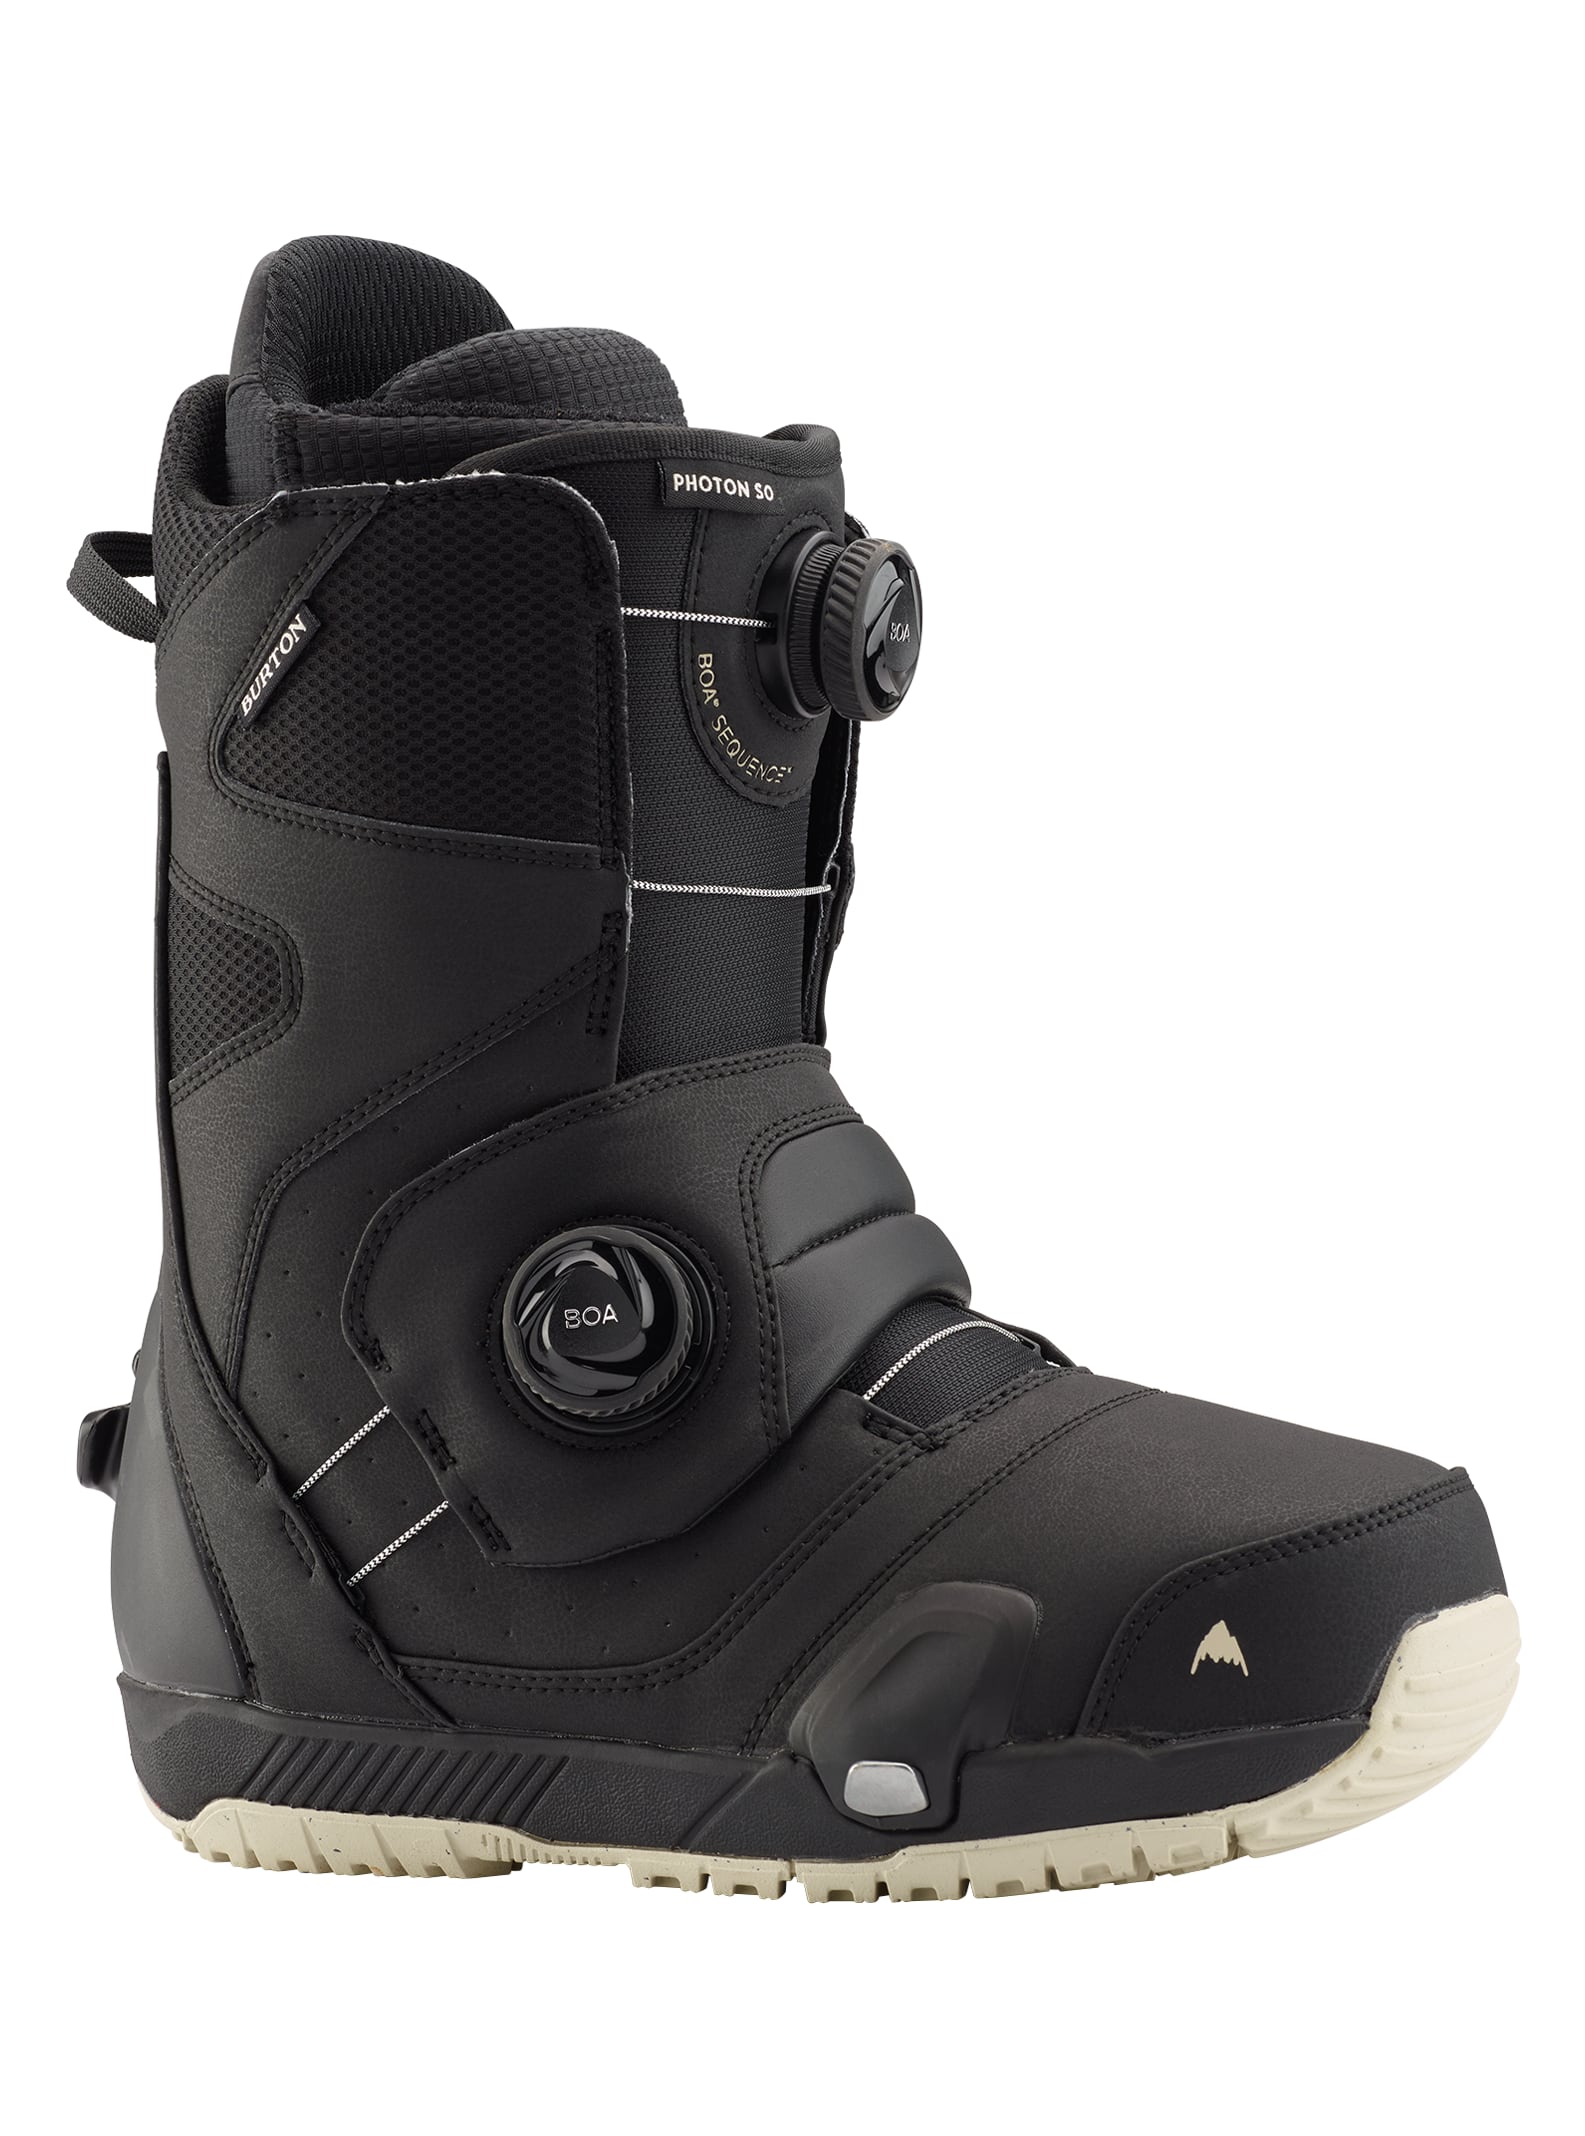 Burton - Boots de snowboard Photon Step On® larges homme, Black, 10